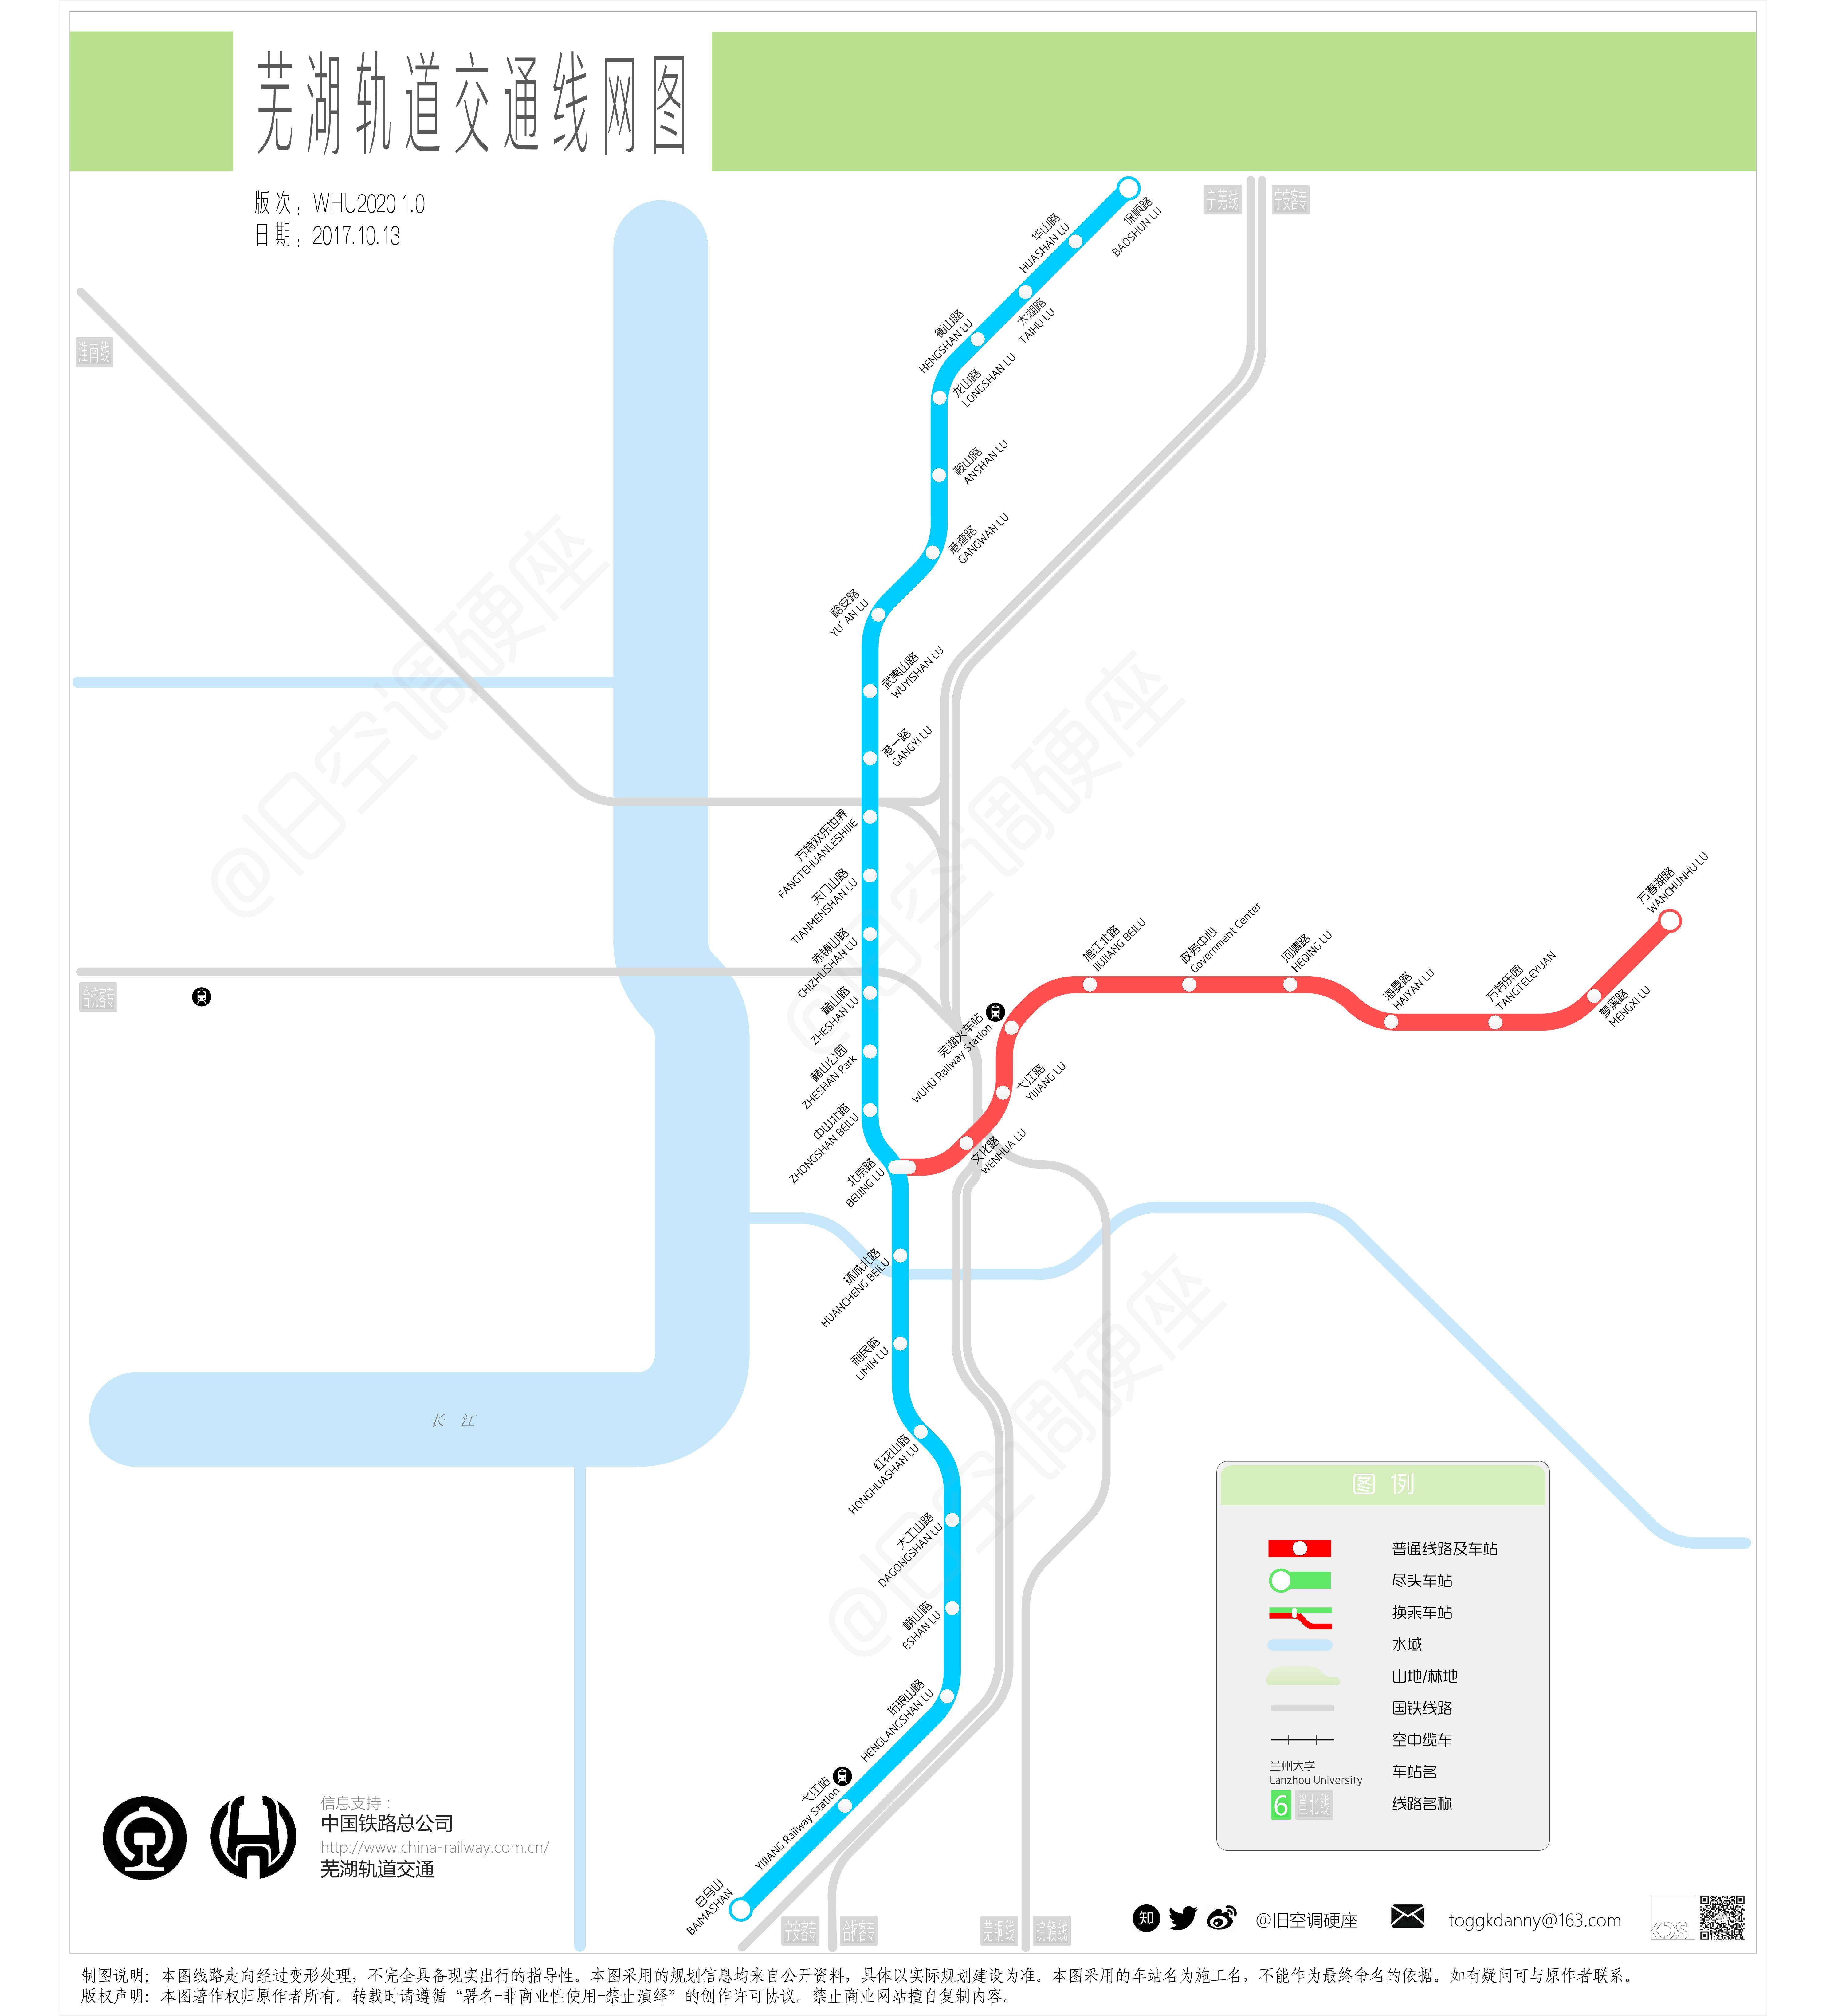 本版线网图包含的轨道交通线路有芜湖轨道交通(跨座式单轨)1号线和2号